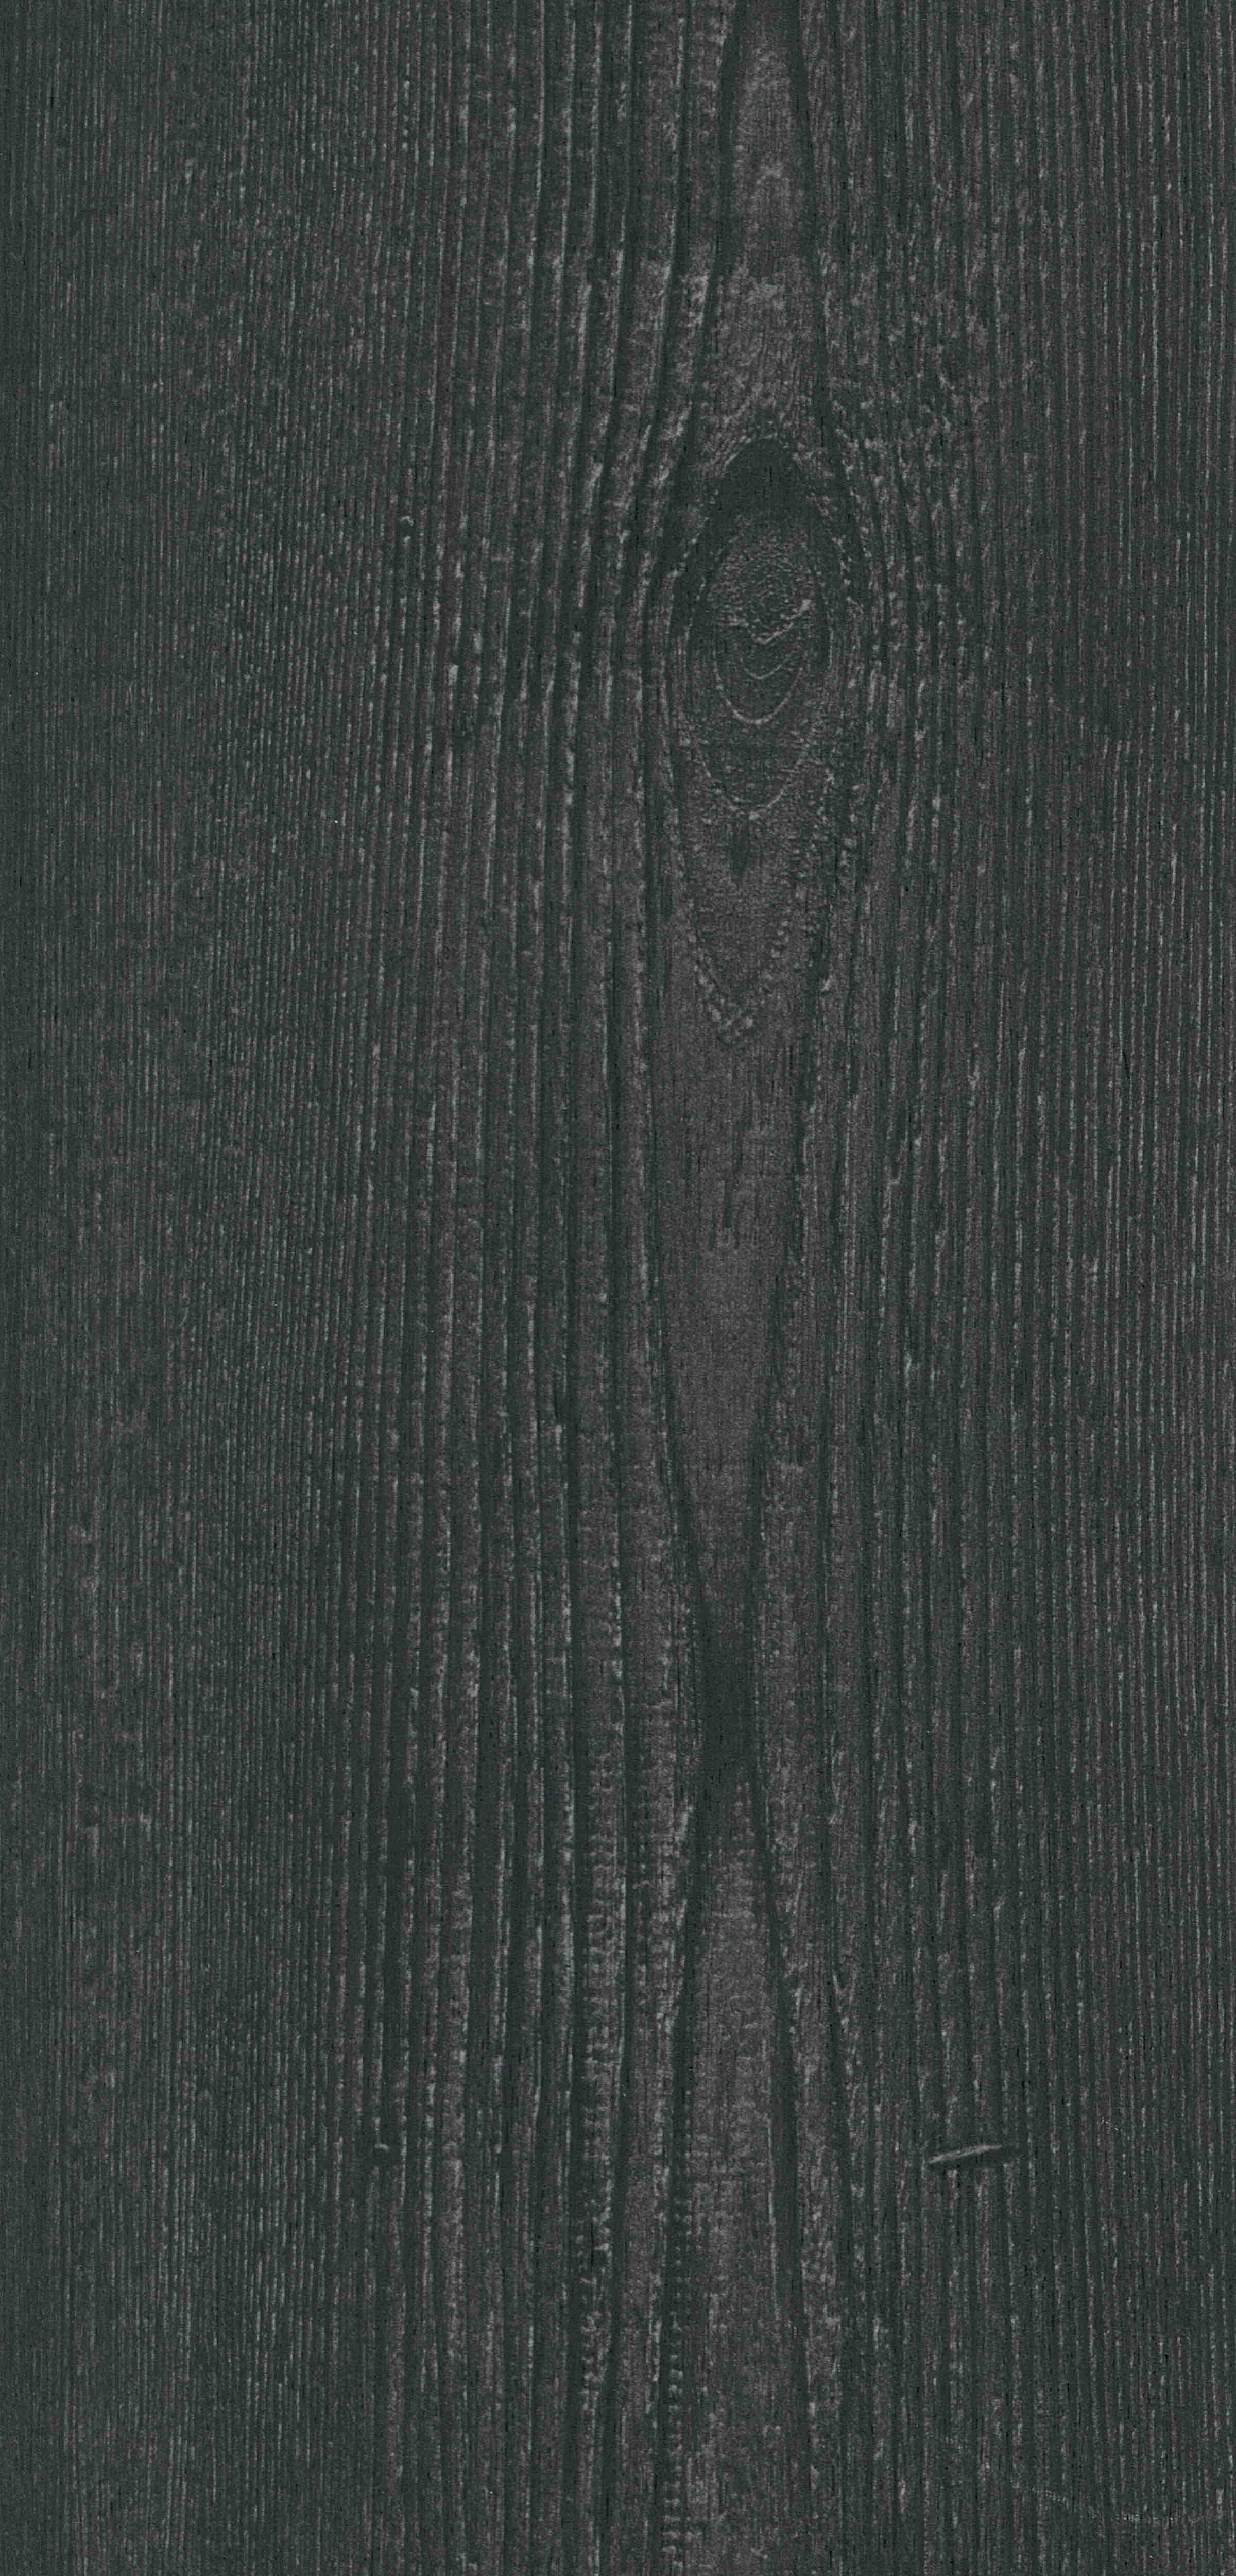 Rappórt | Shadow Ash, 2894 | Paragon Carpet Tiles | Commercial Carpet Tiles